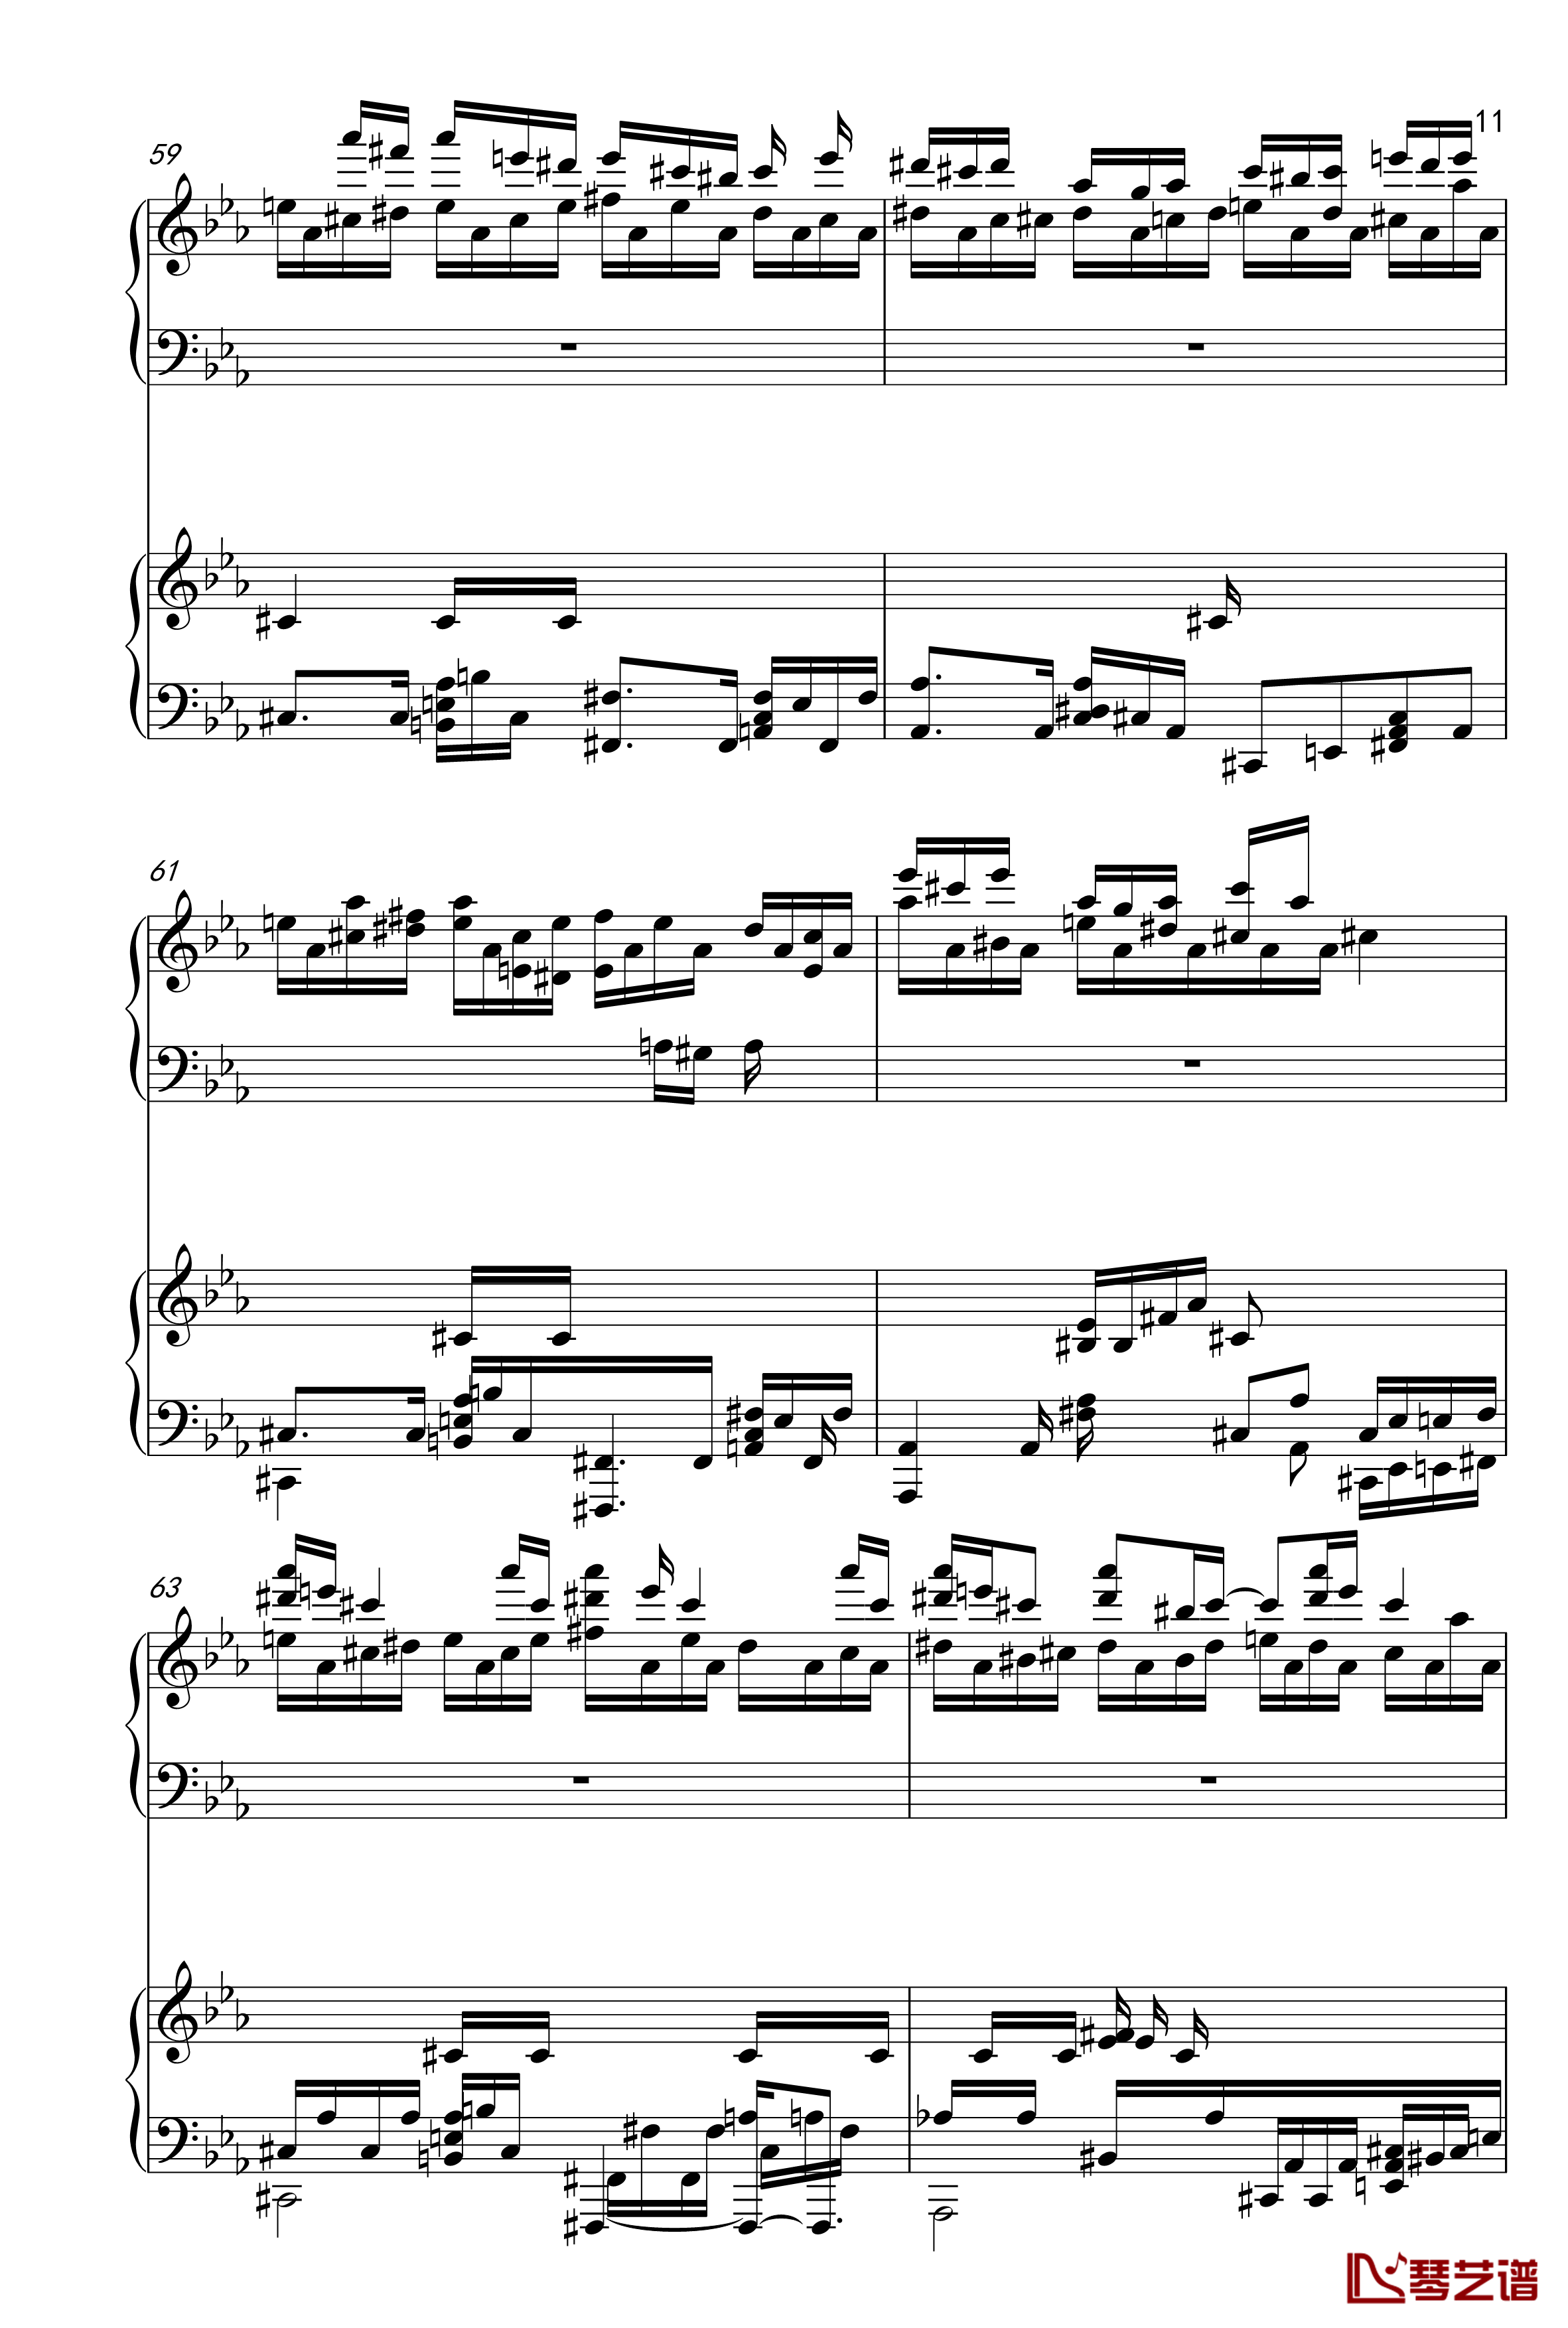 克罗地亚狂想曲钢琴谱-四手联弹-马克西姆-Maksim·Mrvica11